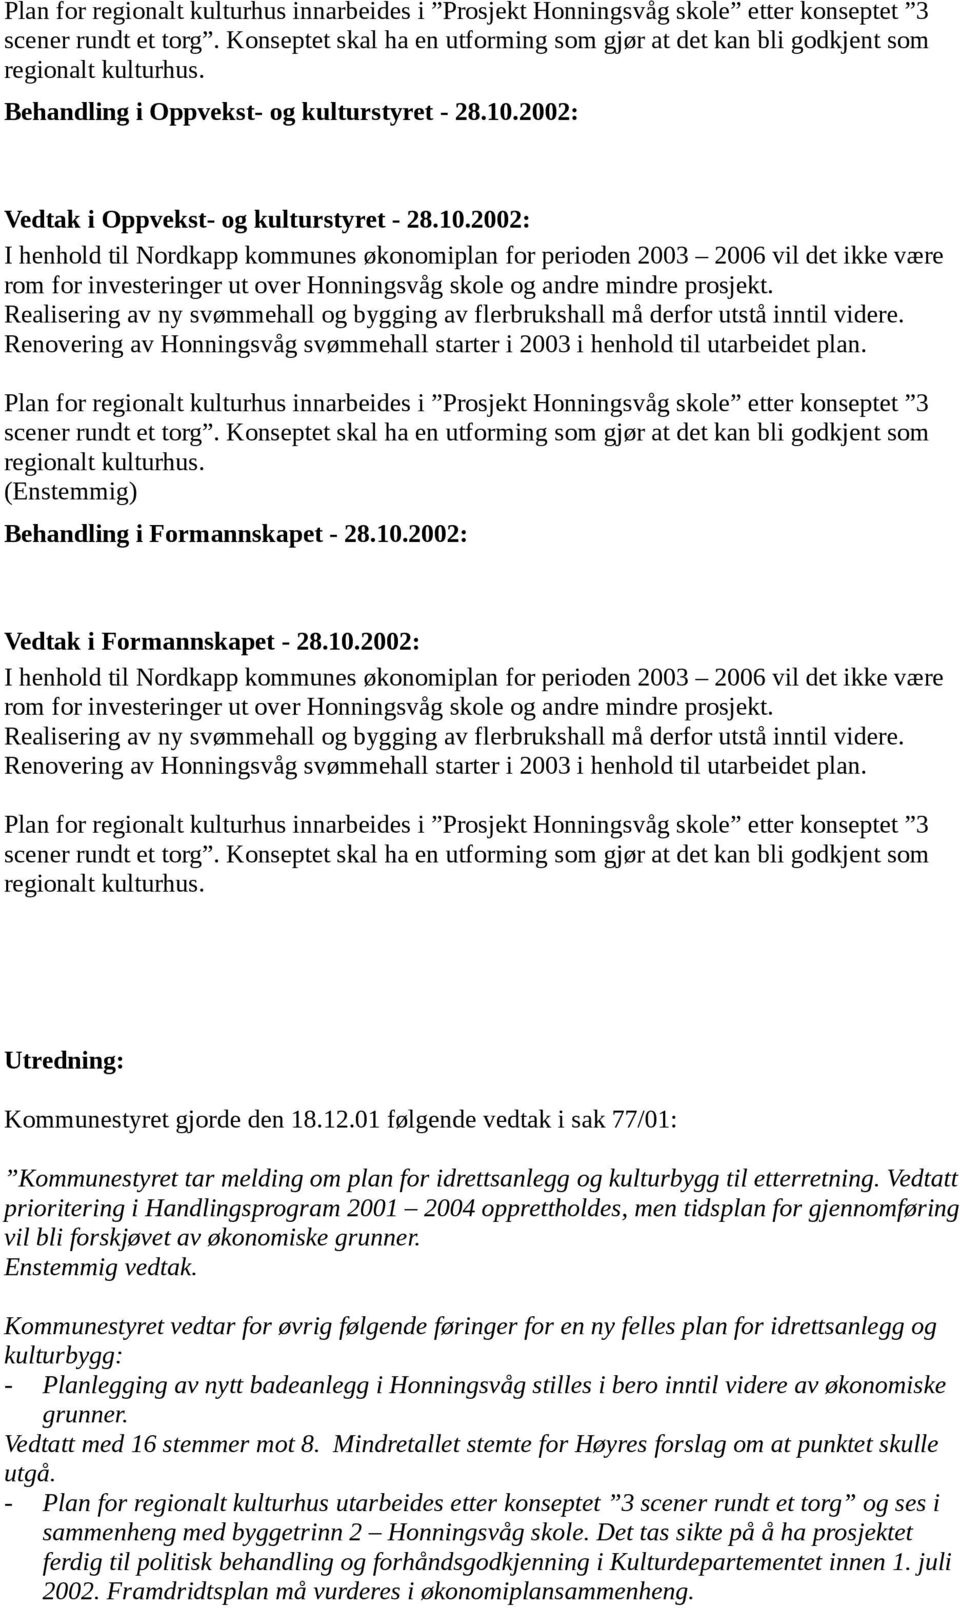 2002: Vedtak i Oppvekst- og kulturstyret - 28.10.